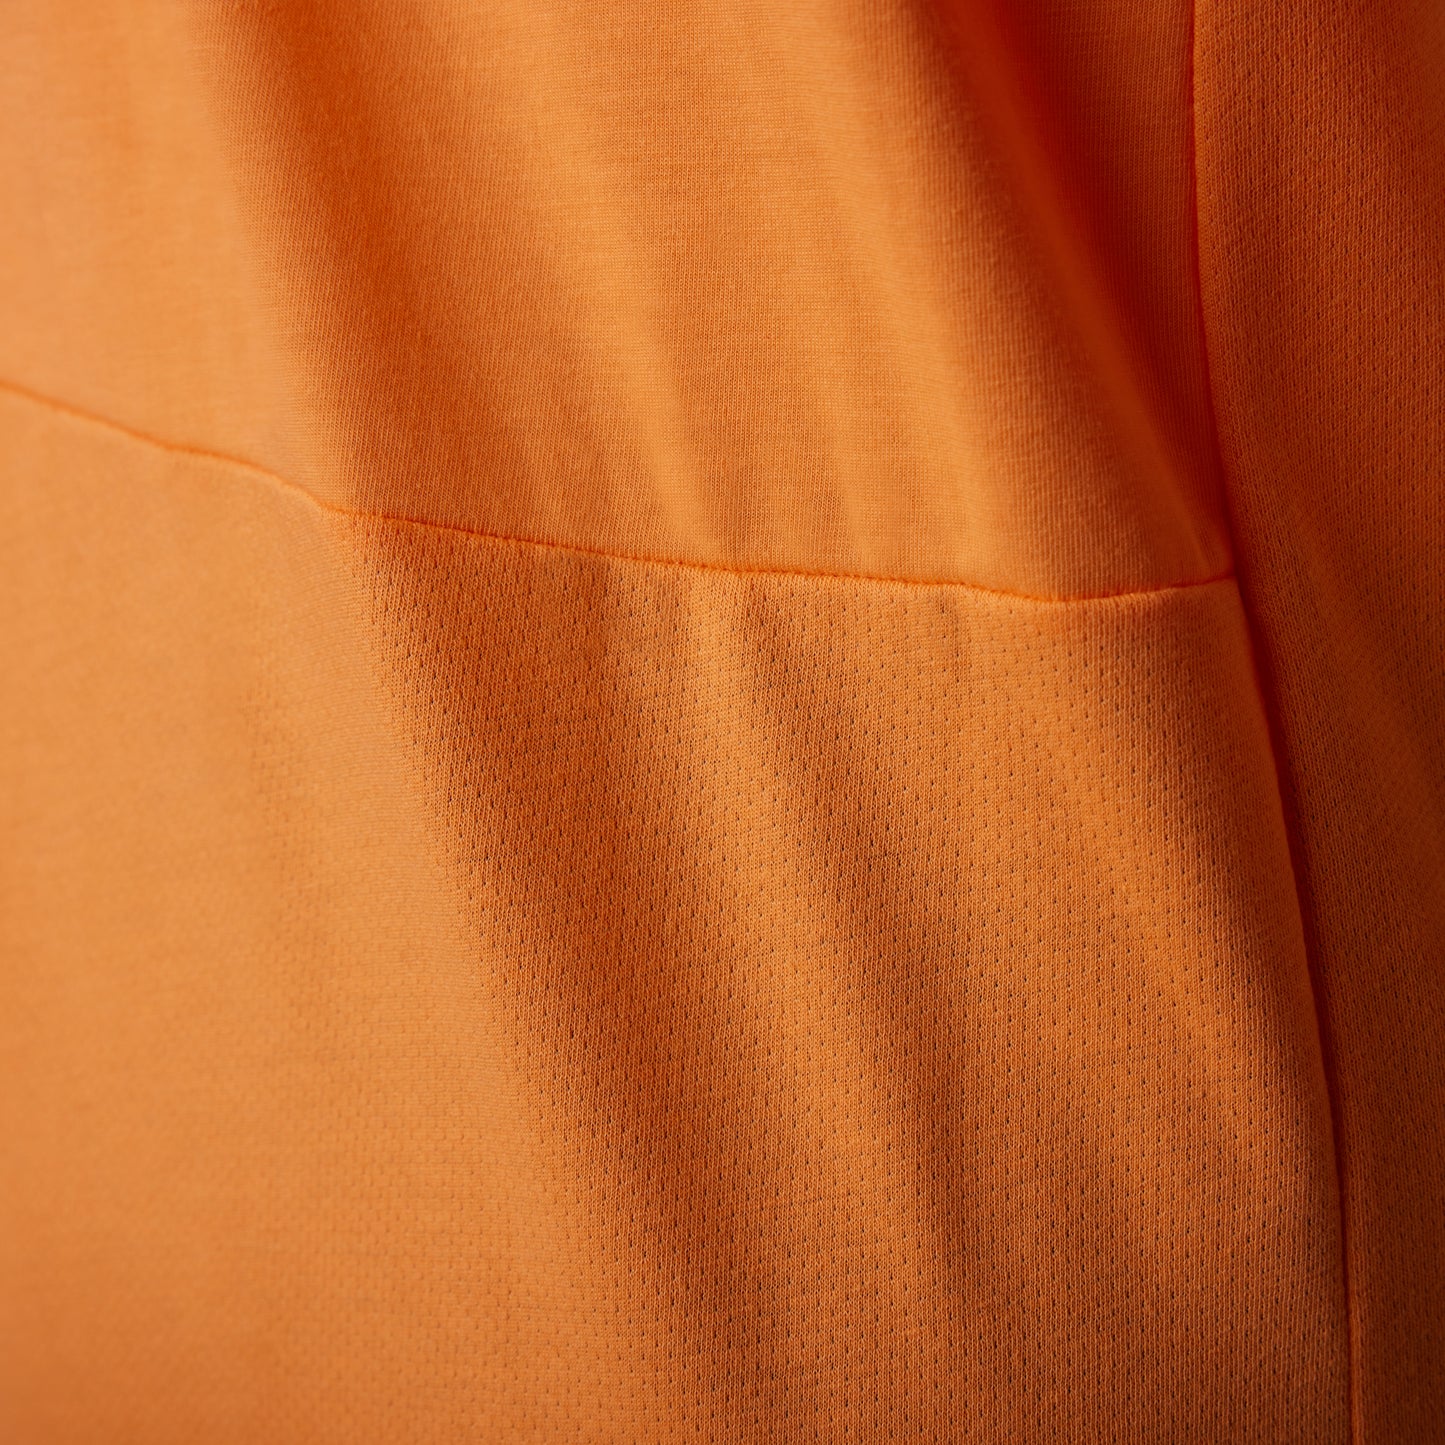 Fox Ranger DriRelease Race Short Sleeve Jersey - L - Day Glo Orange